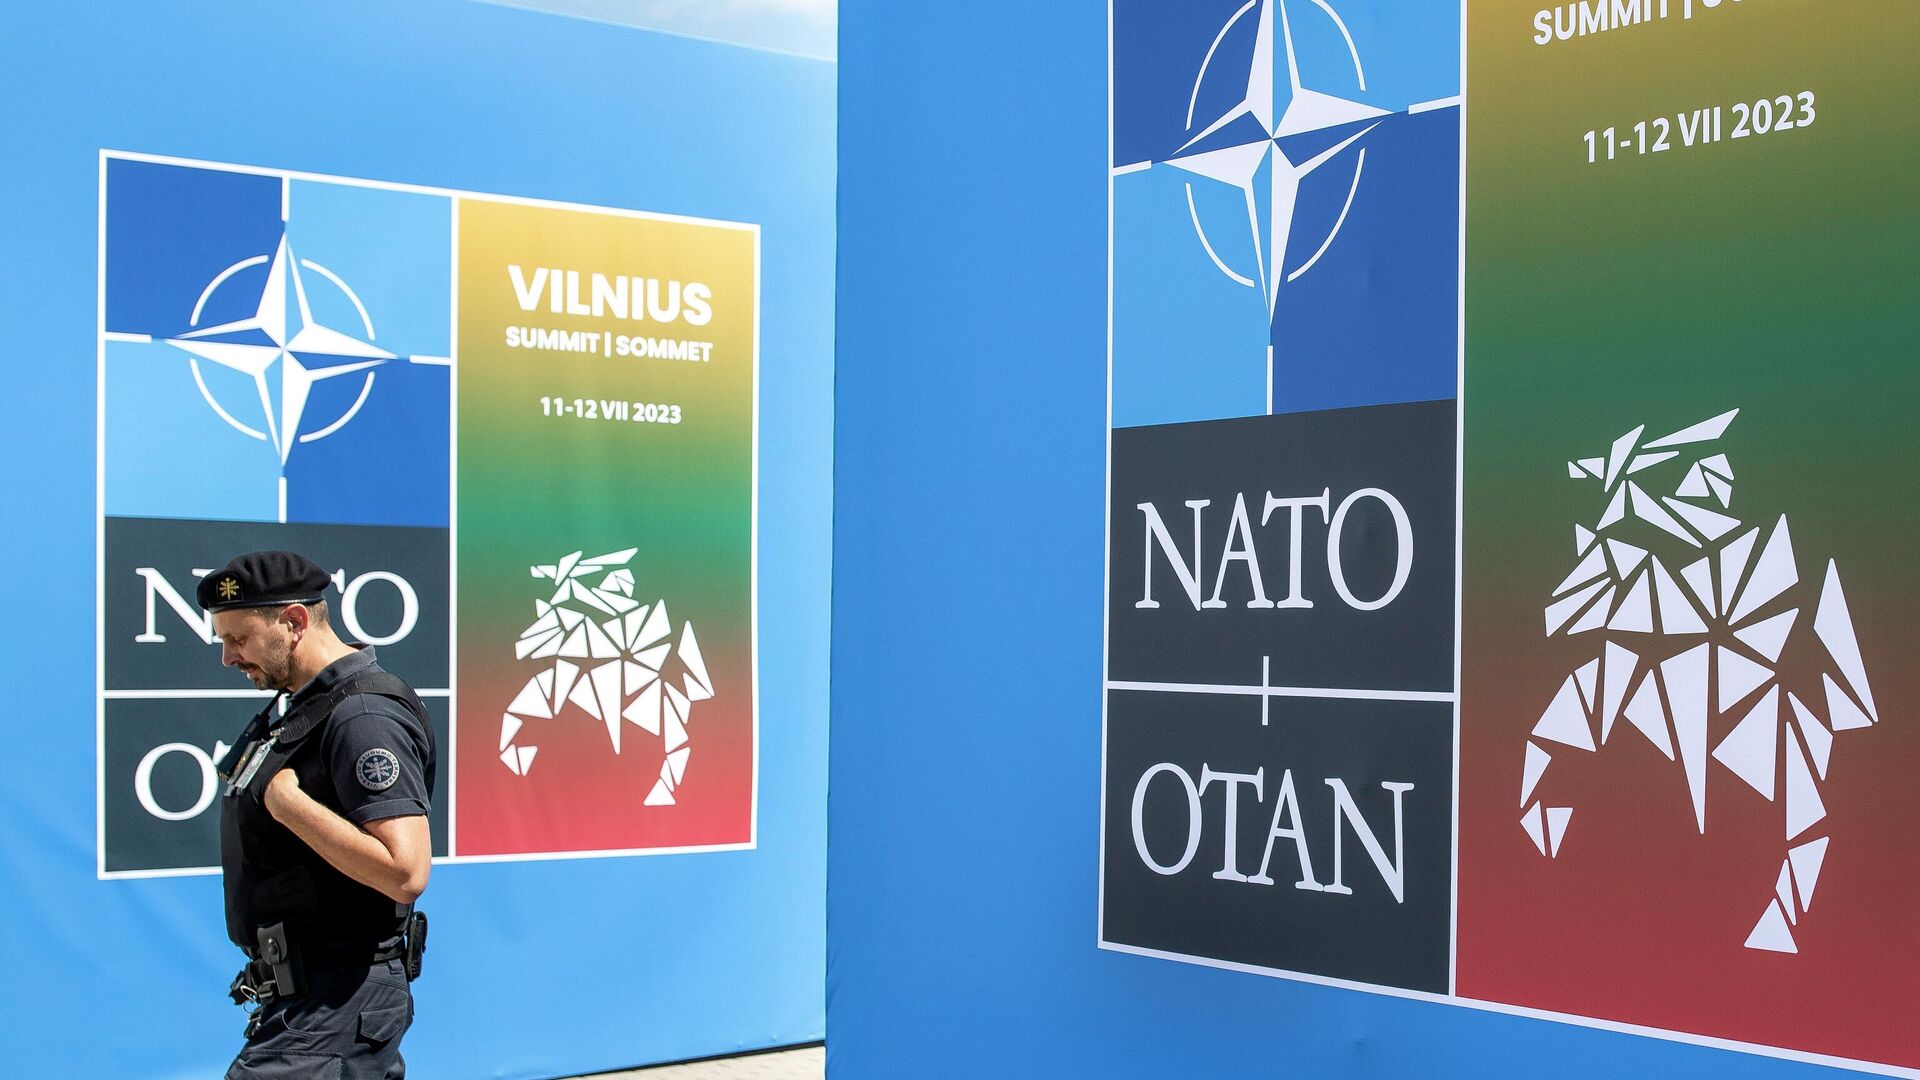 Pripadnik obezbeđenja ispred logoa NATO-a na samitu u Vilnjusu - Sputnik Srbija, 1920, 09.09.2023